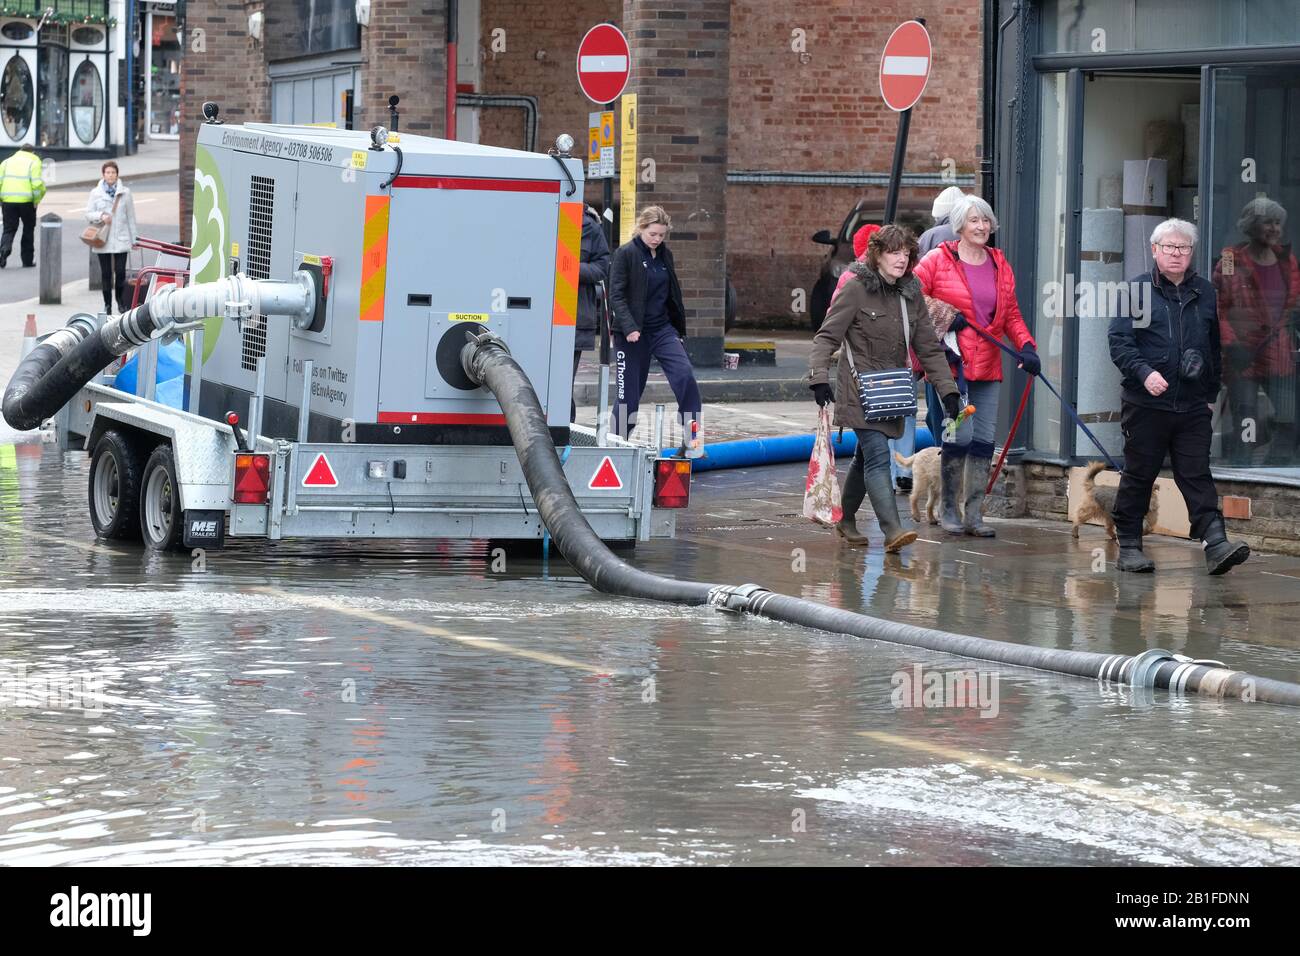 Shrewsbury, Shropshire, Großbritannien - Dienstag, 25. Februar 2020 - Käufer bewegen sich in der Innenstadt um Überschwemmungen, Pumpen und Rohre. Der Fluss Severn wird später heute seinen Höhepunkt erreichen, und für Shrewsbury gilt derzeit eine "Severn Flood Warning". Foto Steven May / Alamy Live News Stockfoto